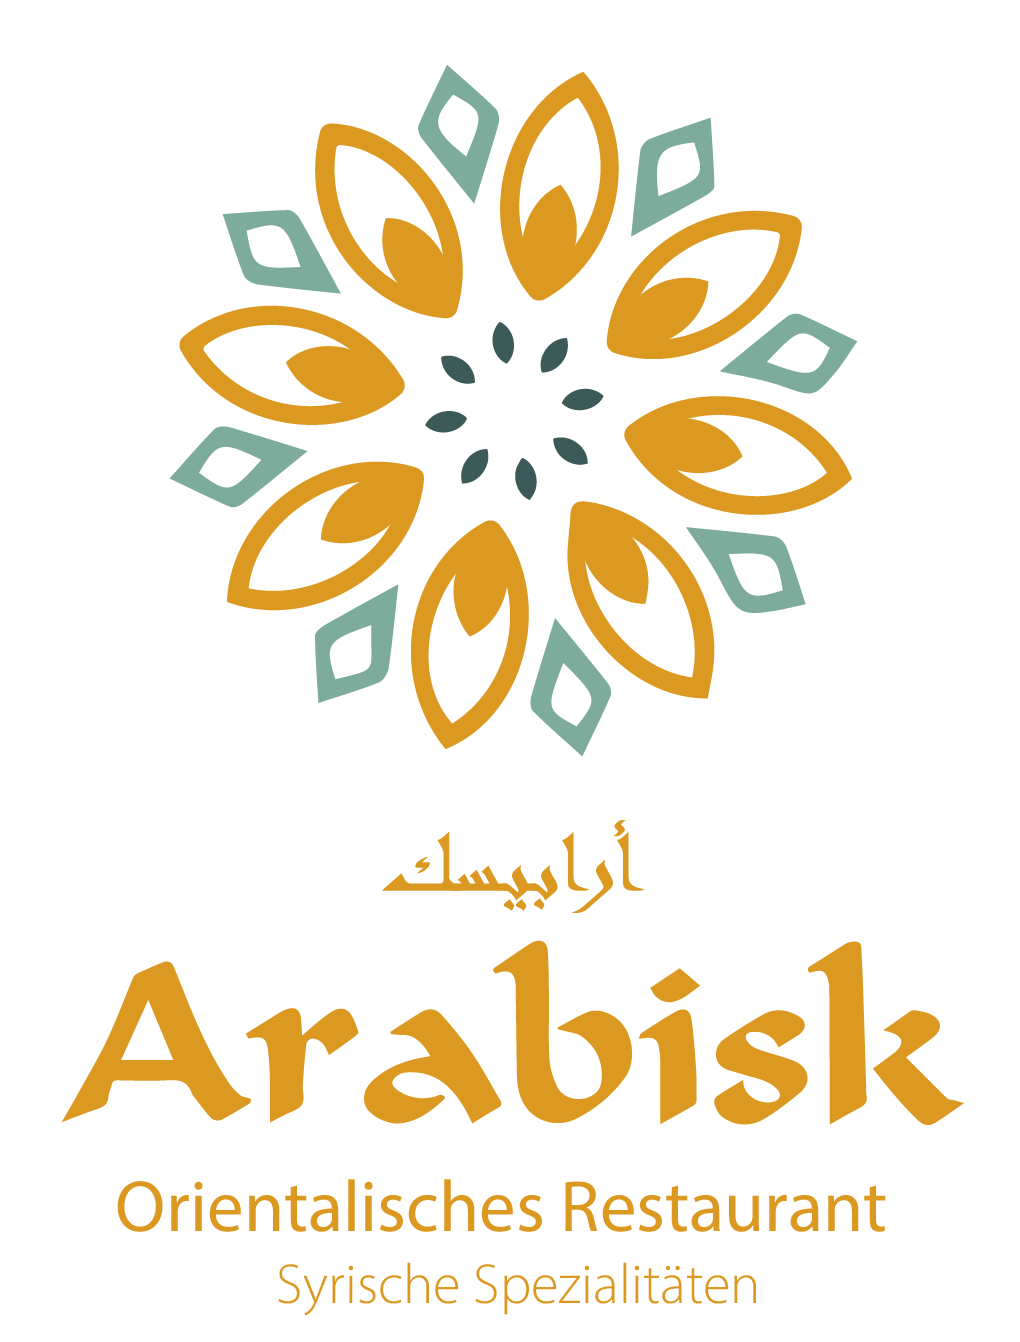 Arabisk Innsbruck